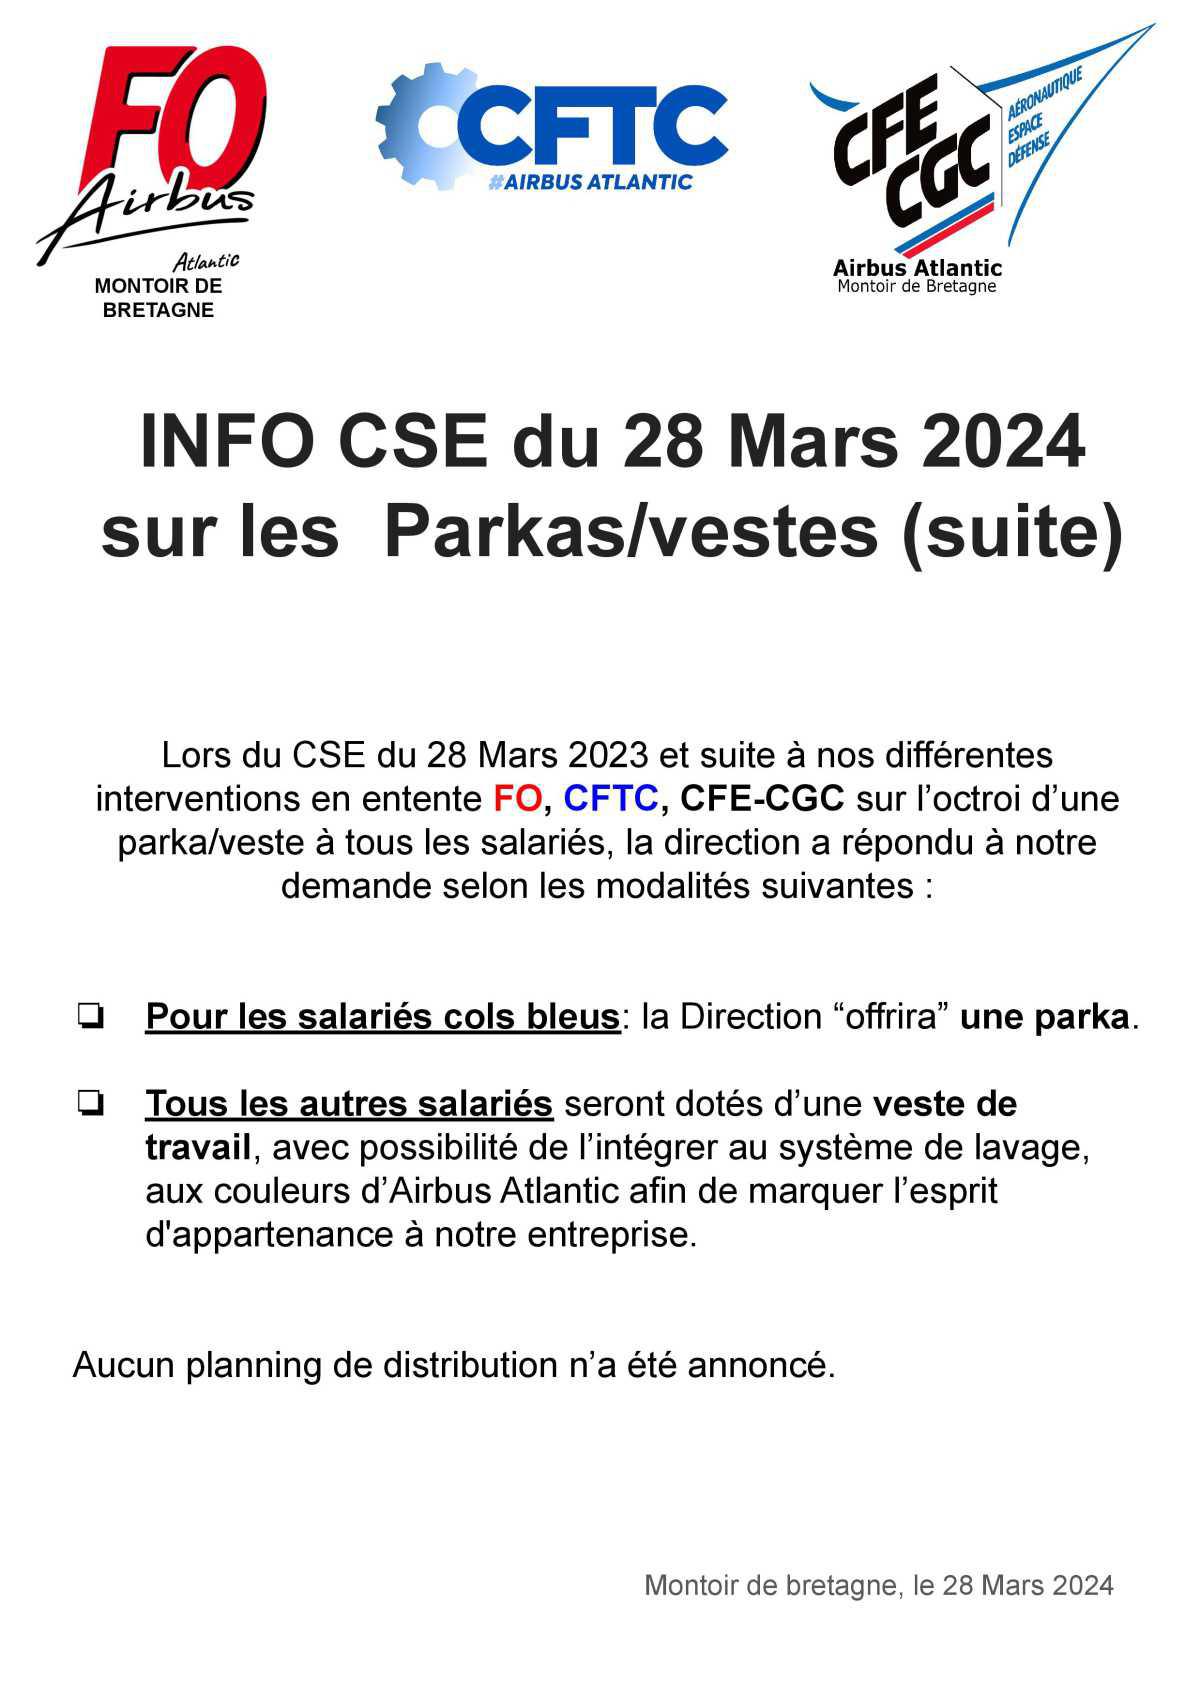 Info CSE du 28 mars 2024 : Parkas - Vestes